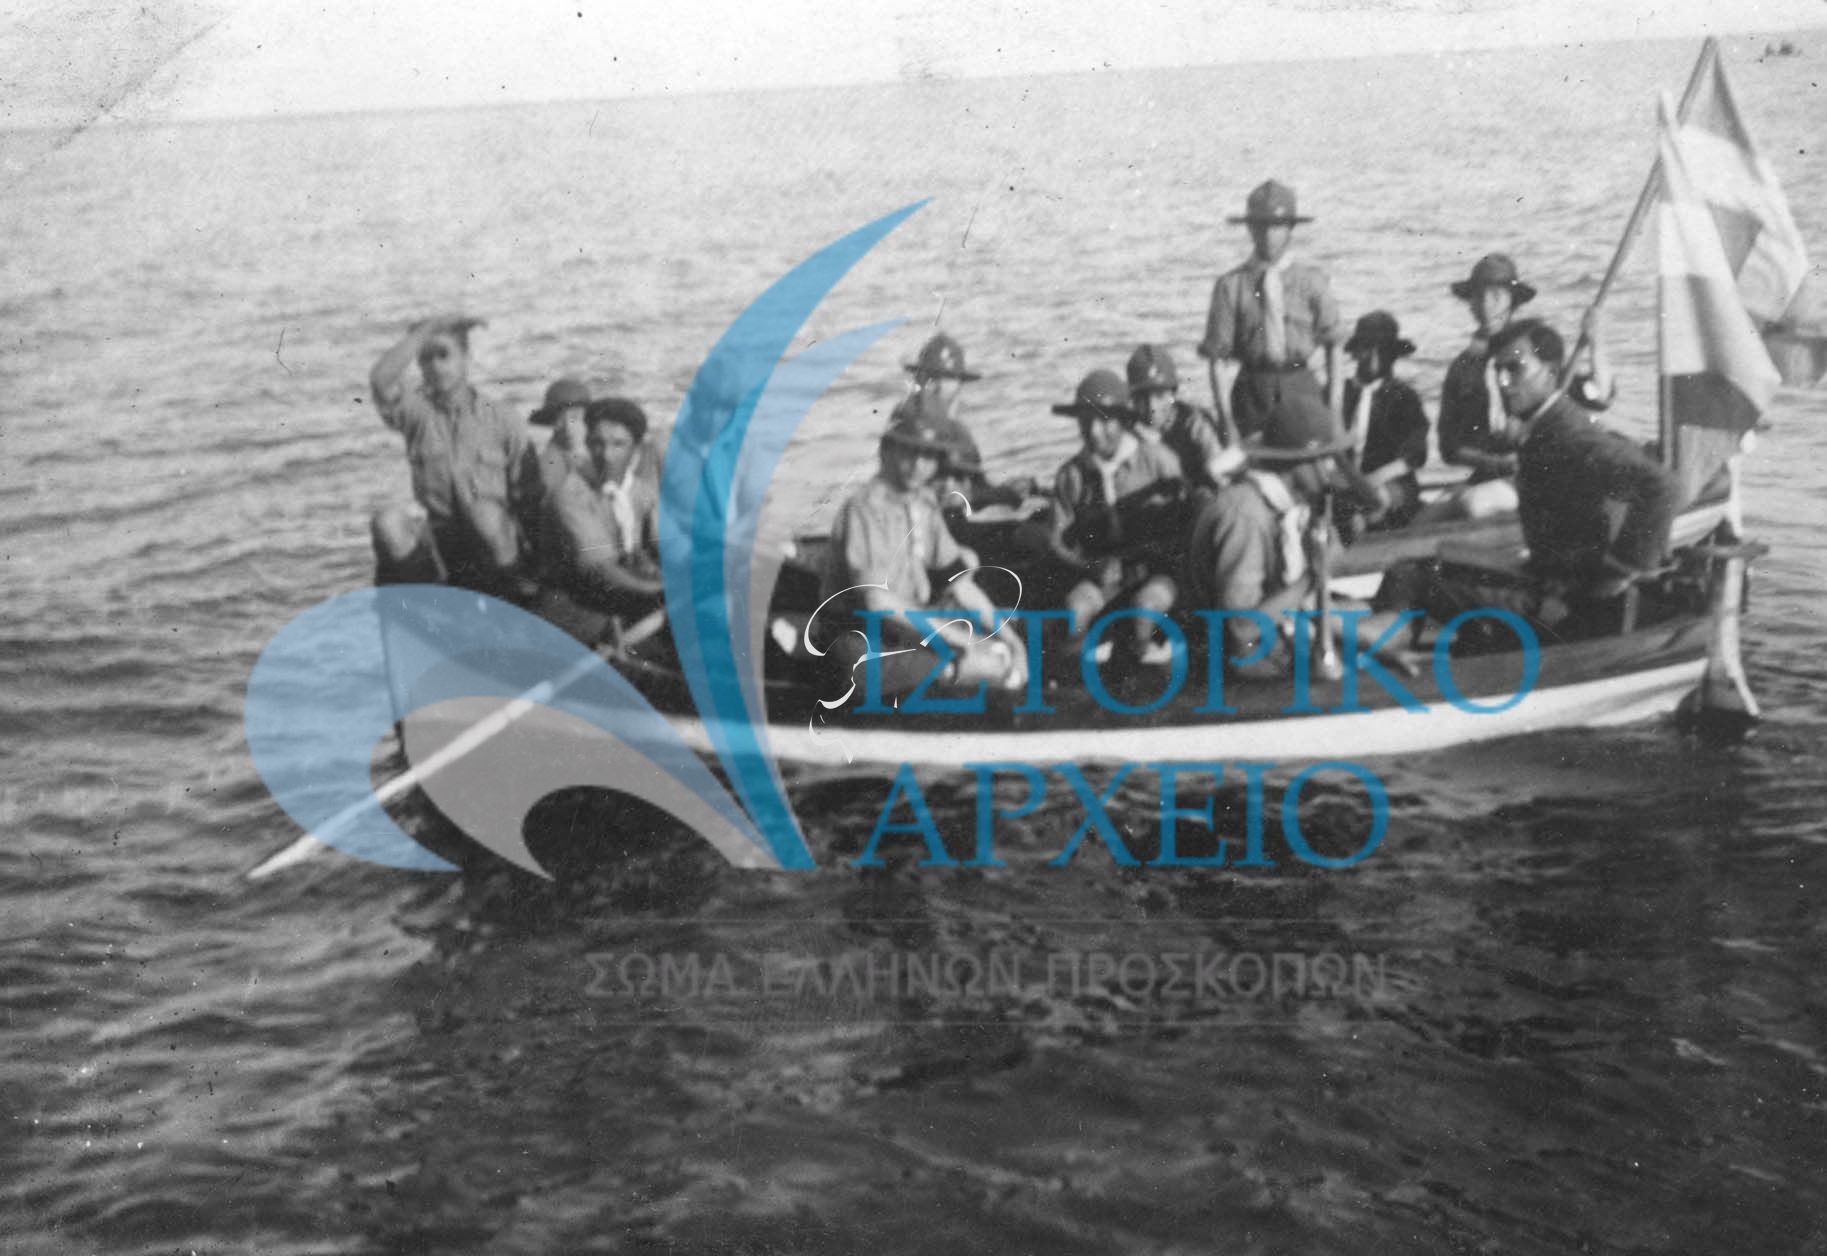 Η 2η Ομάδα Προσκόπων Κέρκυρας σε εκδρομή στο Μον Ρεπό το 1927 Περιήγηση με βάρκα στις 7 Δεκεμβρίου του 1927.